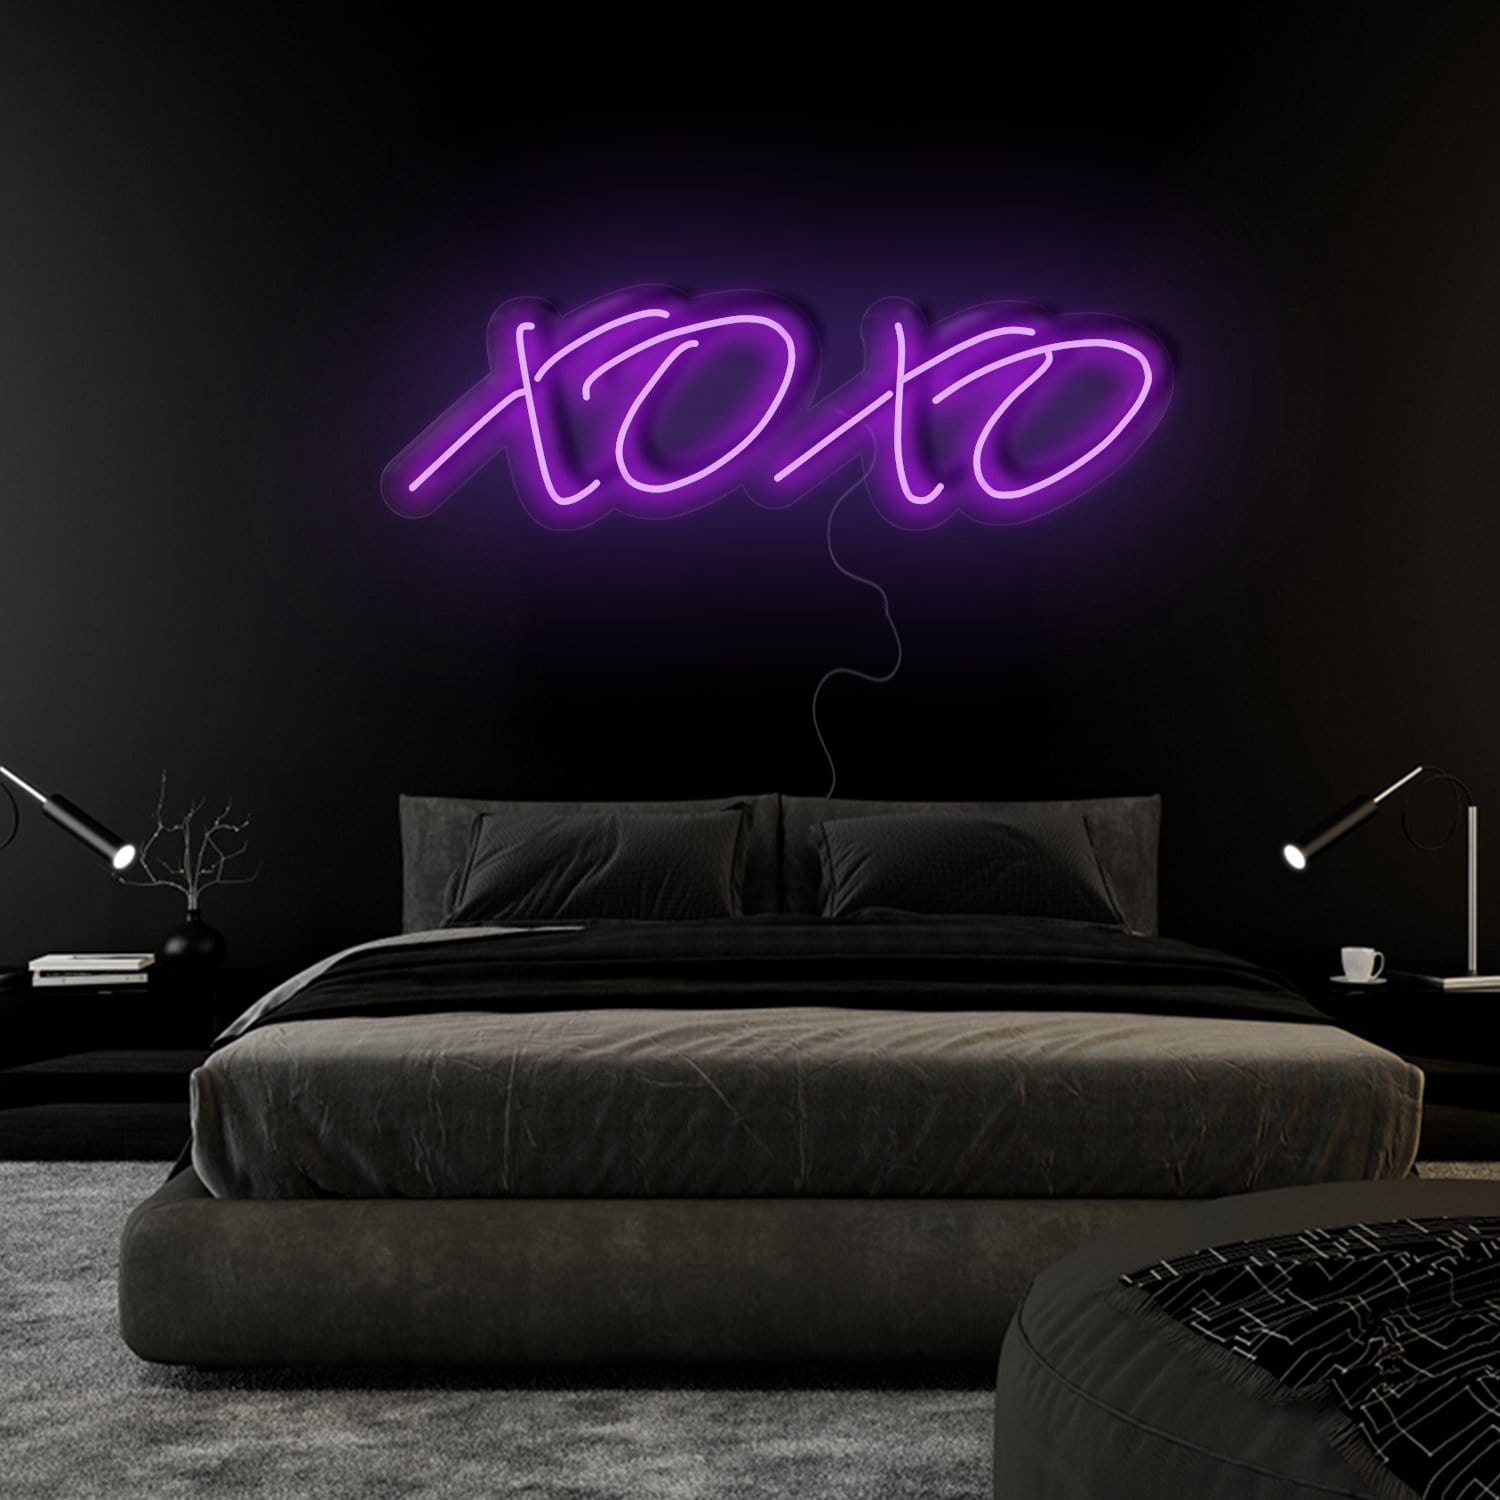 " Xo Xo" LED Neonschild Sign Schriftzug - NEONEVERGLOW